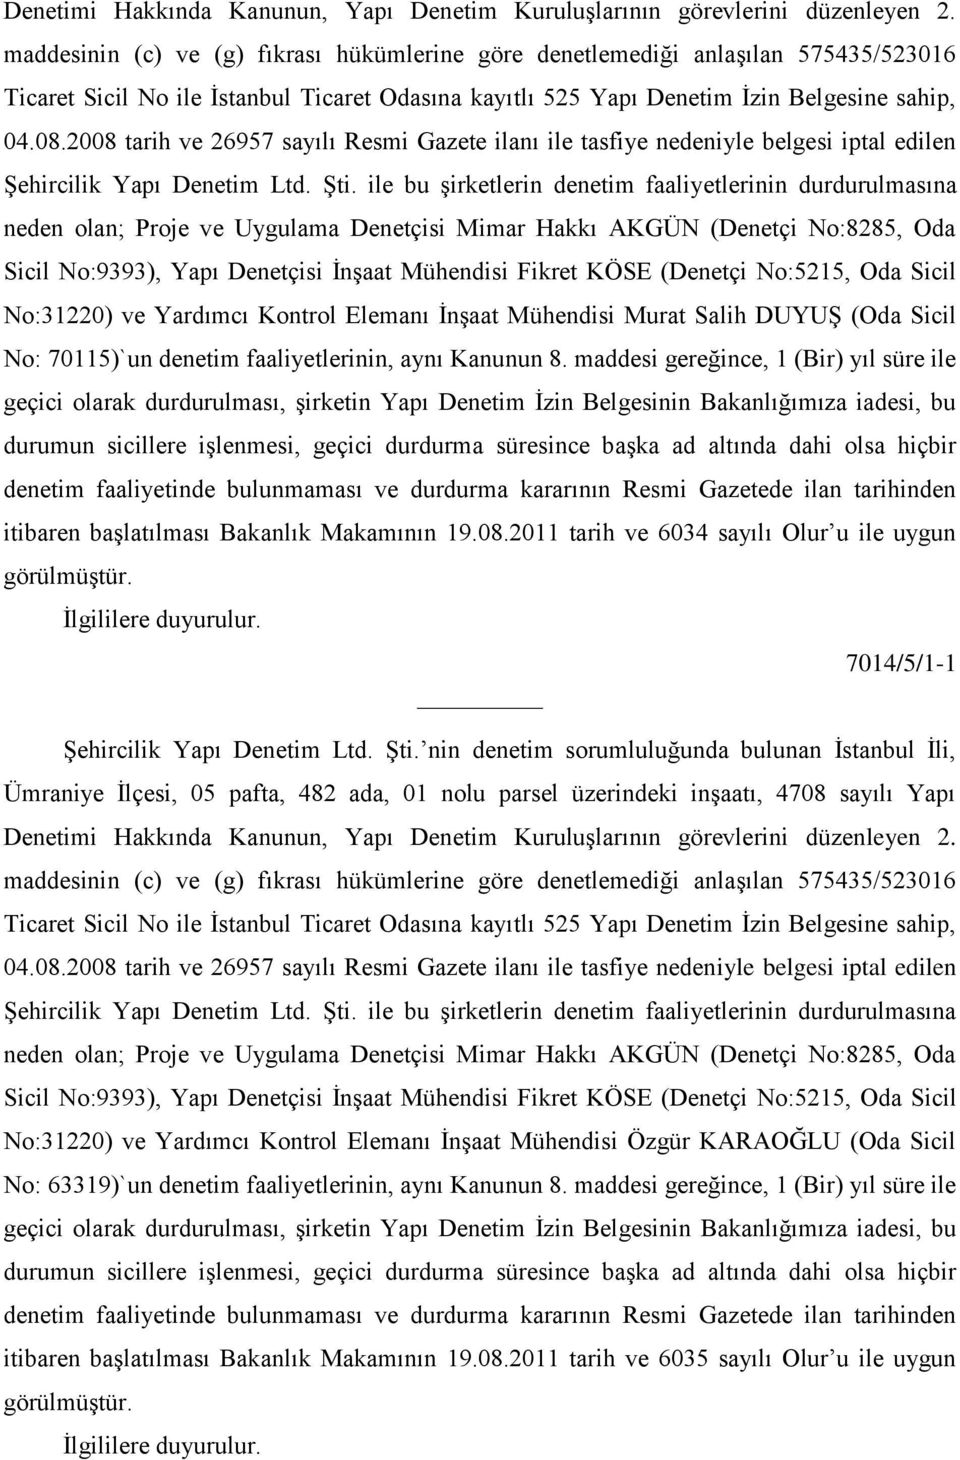 2008 tarih ve 26957 sayılı Resmi Gazete ilanı ile tasfiye nedeniyle belgesi iptal edilen ġehircilik Yapı Denetim Ltd. ġti.